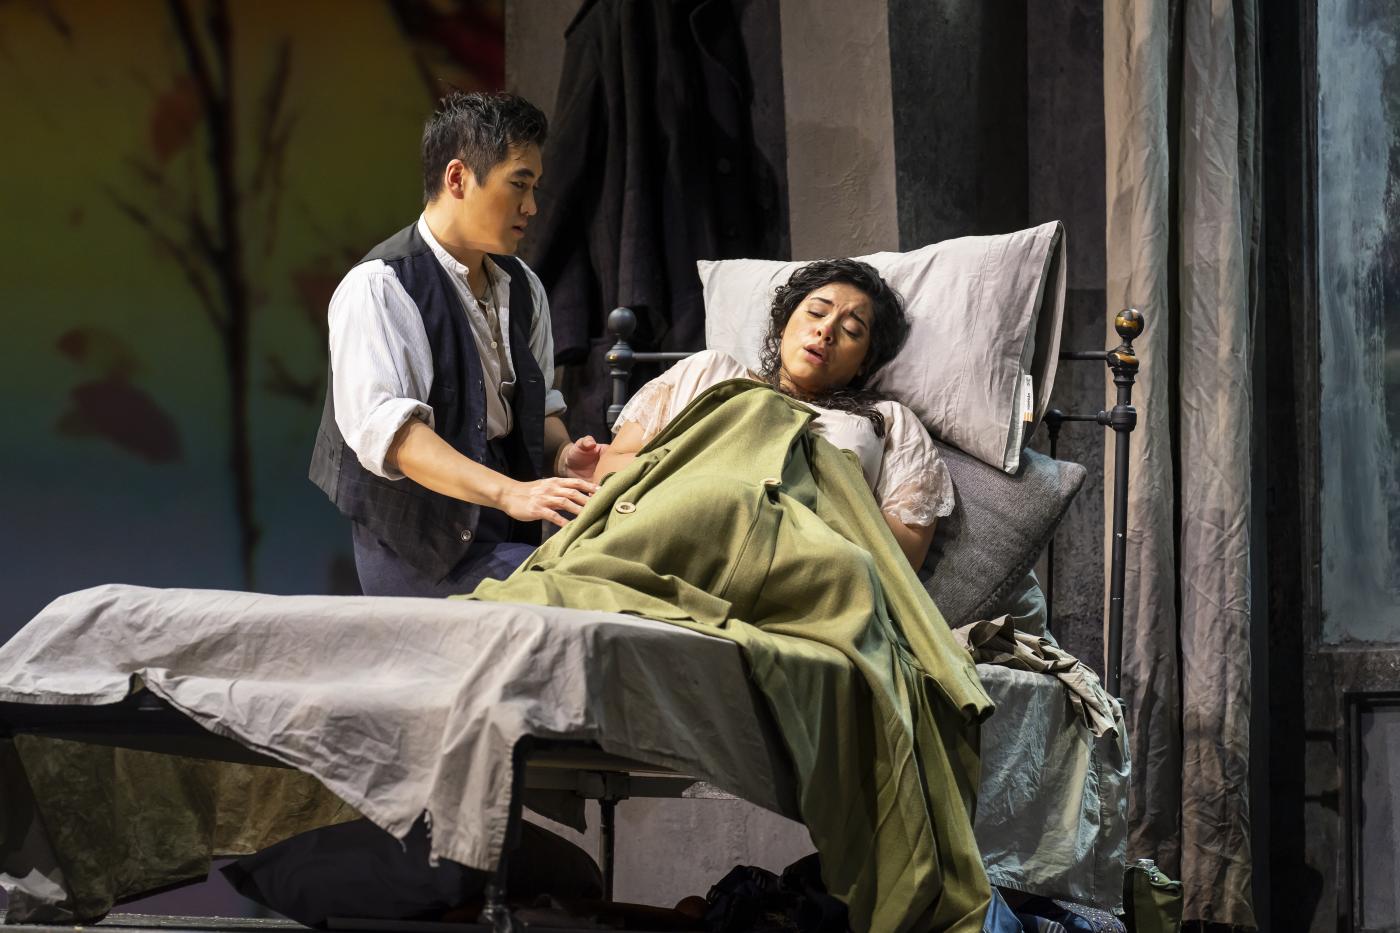 Tenor Kang Wang (left) plays Rodolfo; soprano Gabriella Reyes (right) plays Mimì